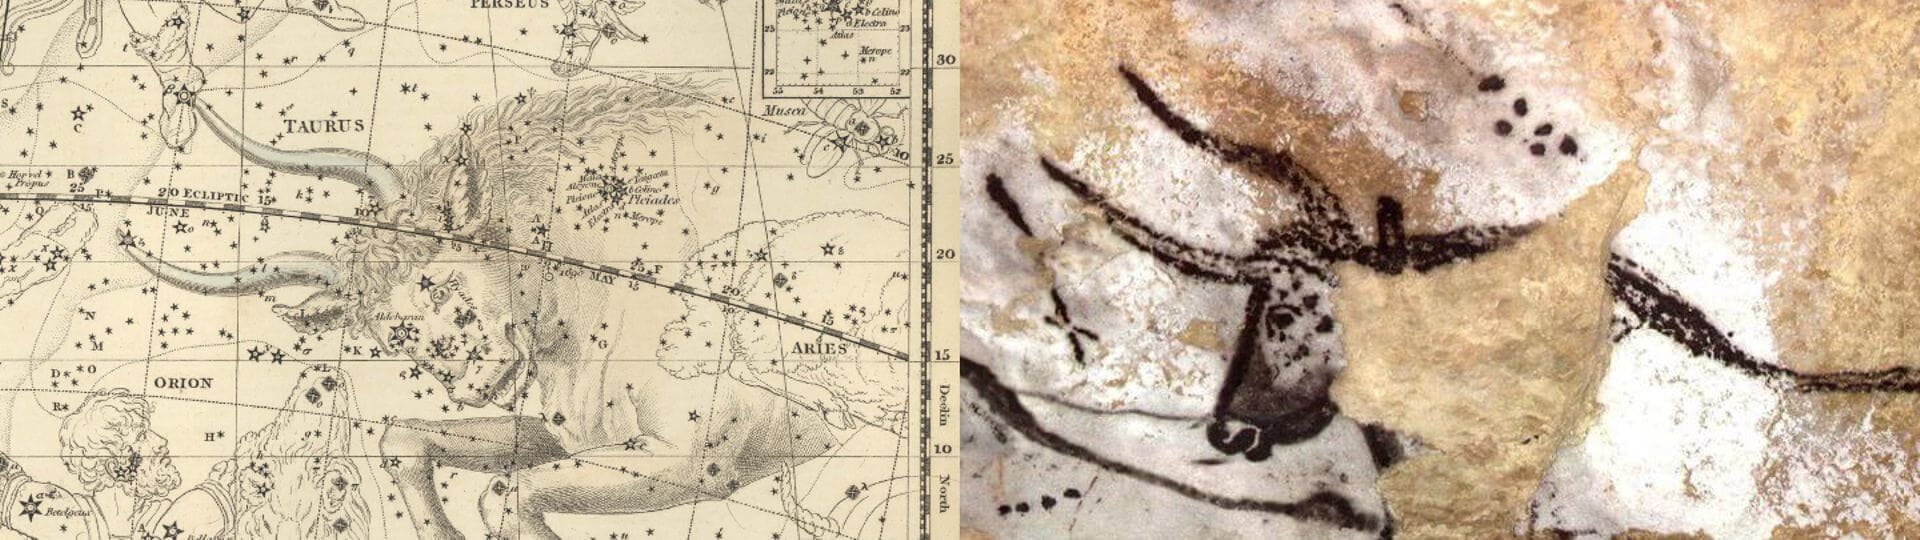 Imagen de uno de los toros de la cueva de Lascaux y el dibujo de la constalación de Tauro de Alexander Jamieson. Lo más sorprende es ver el parecido de las siete estrellas de las Pléyades en la pintura de Lascaux